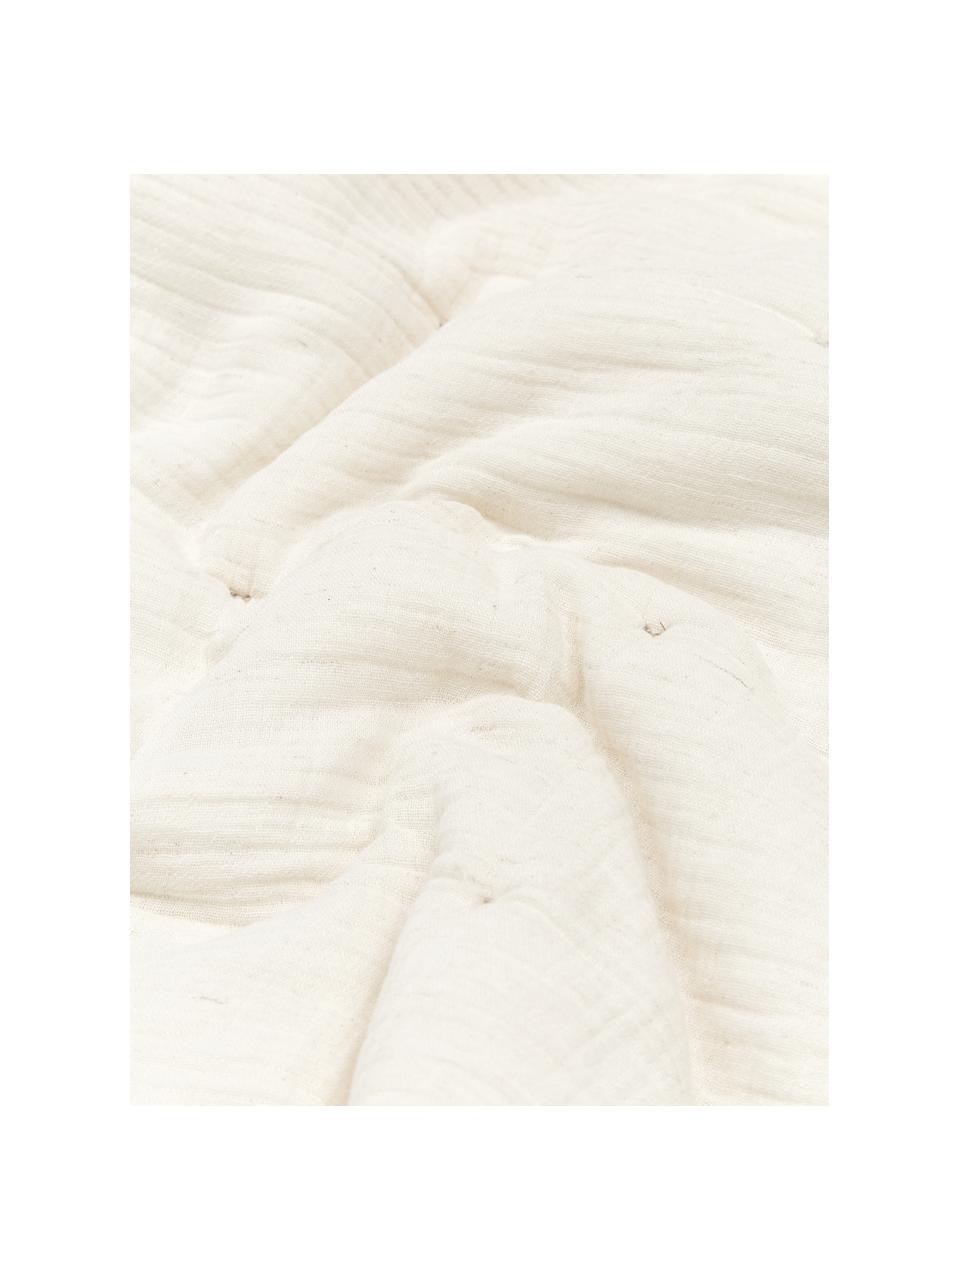 Copriletto trapuntato in mussola di cotone beige Lune, Rivestimento: 100% cotone, Beige, Larg. 180 x Lung. 250 cm (per letti da 140 x 200 cm)